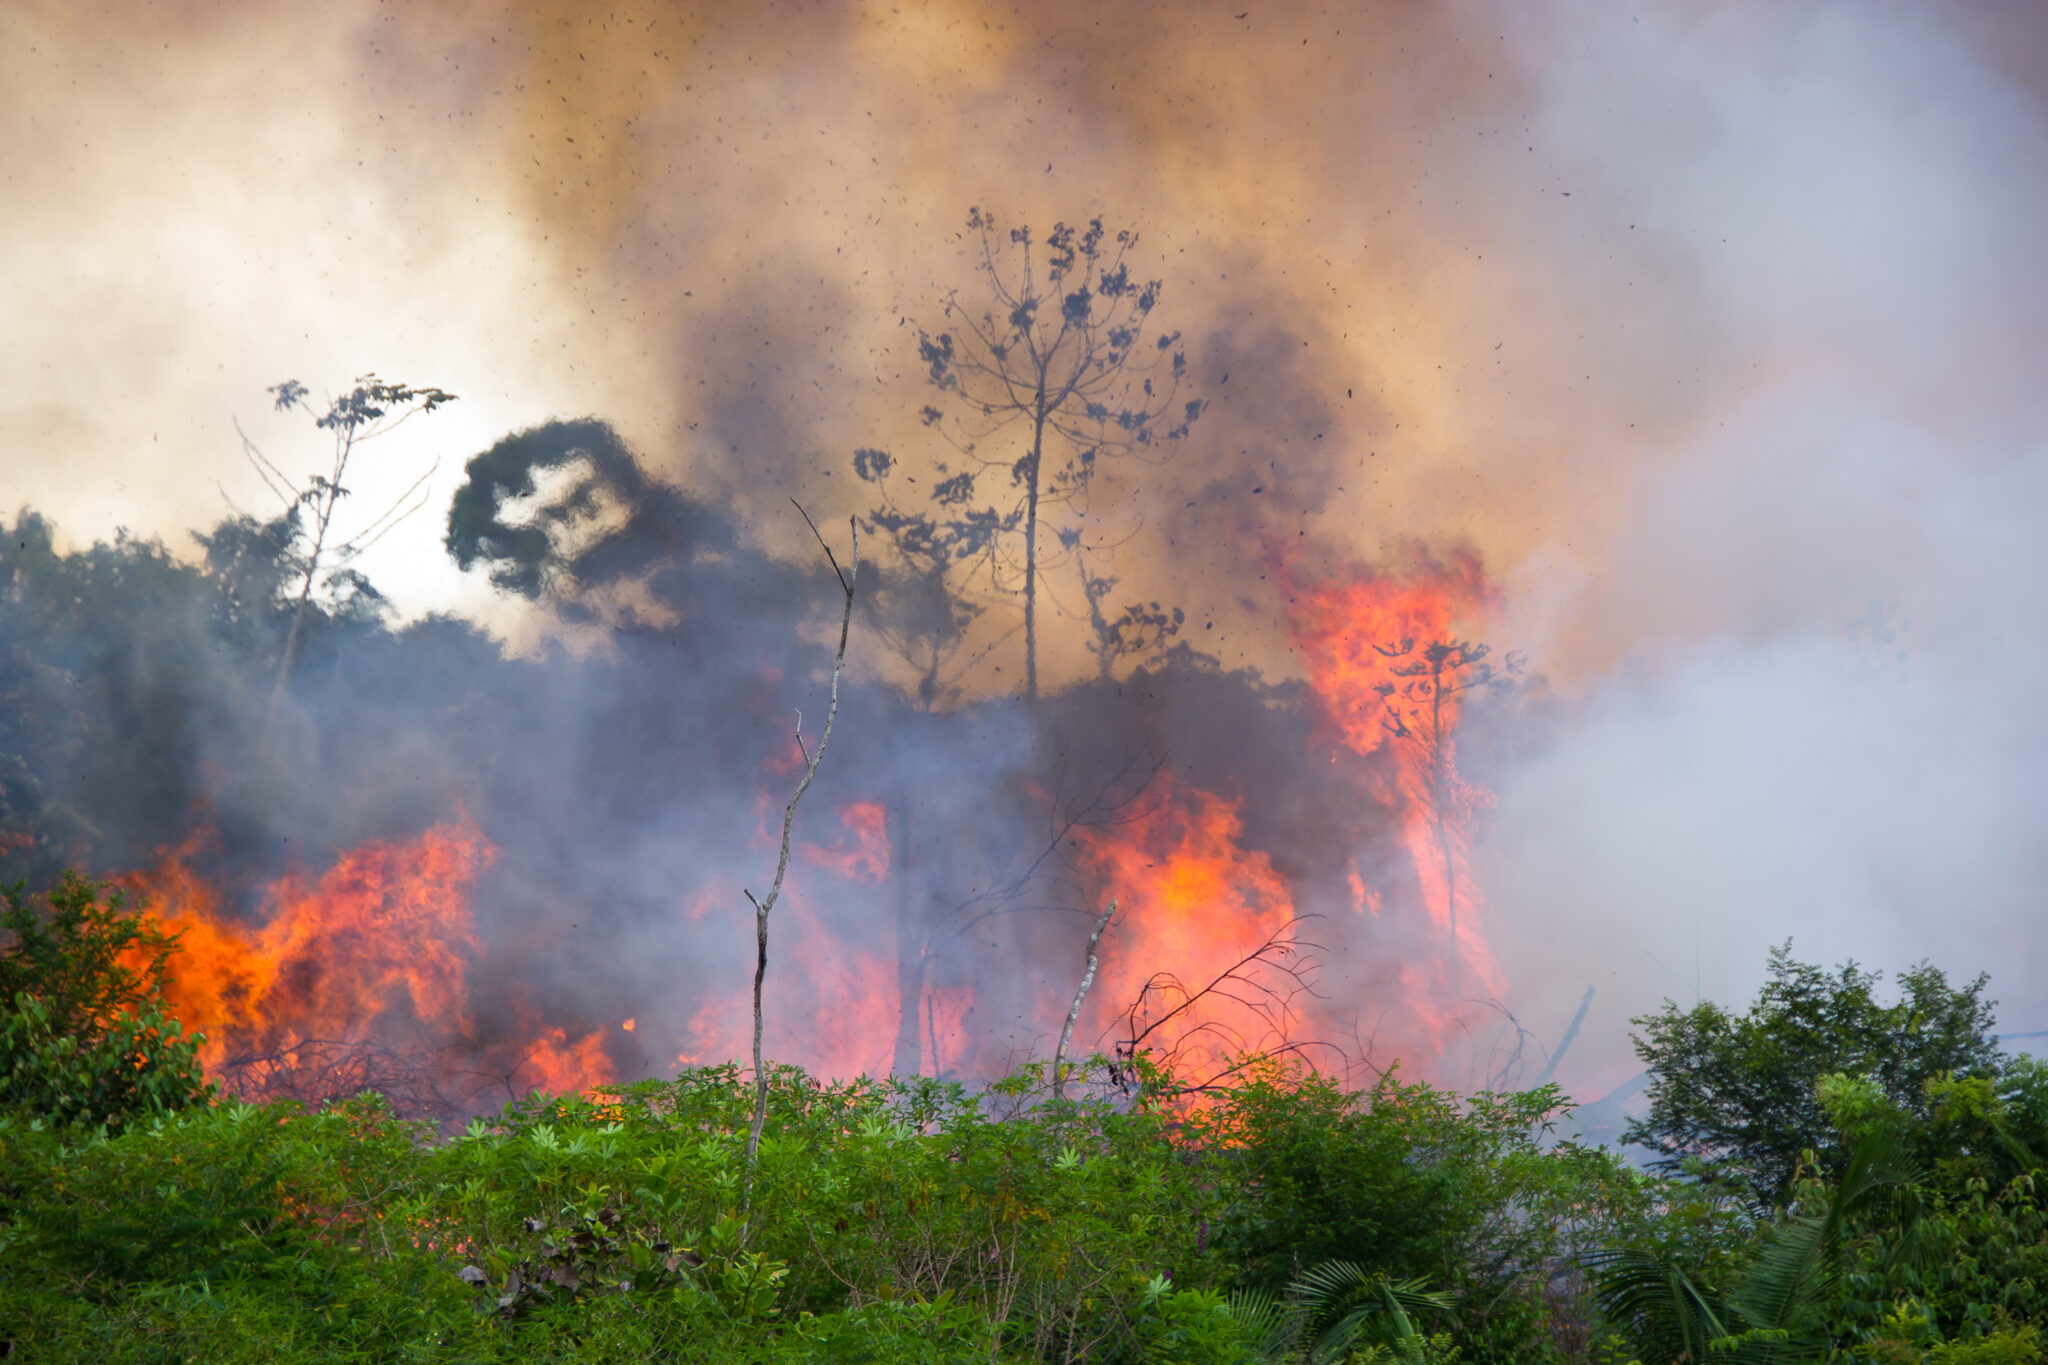 Amazon fires